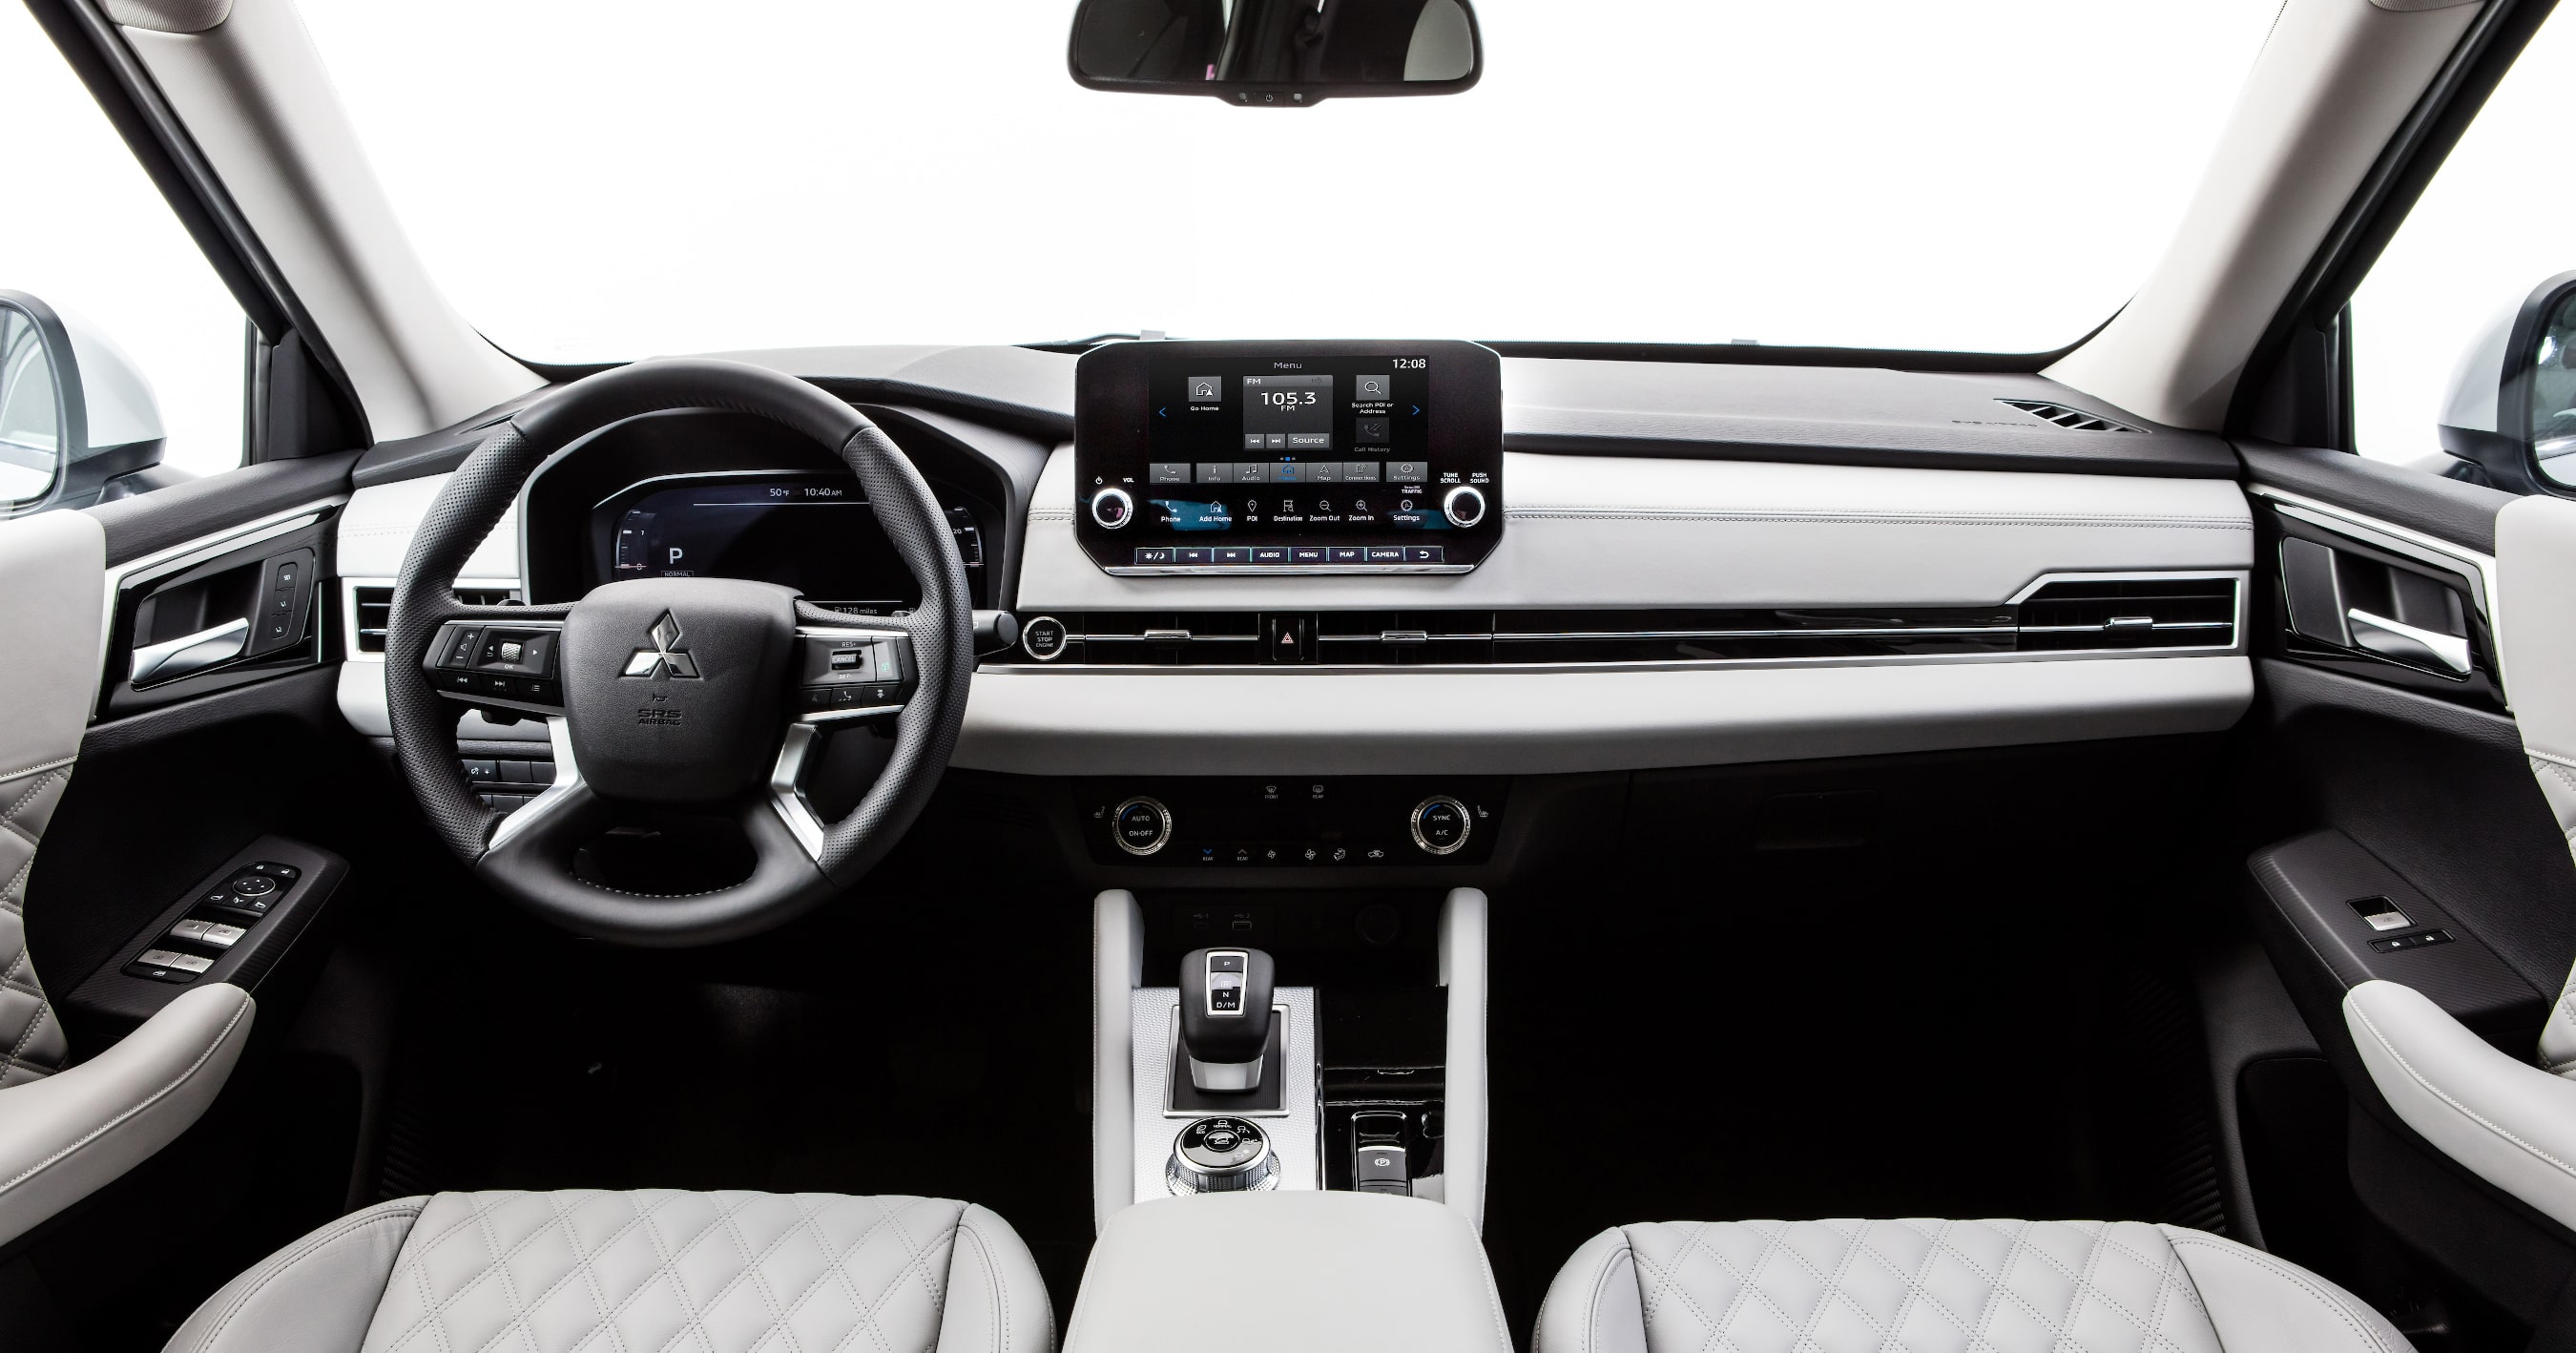 2022 Mitsubishi Outlander interior in Light Gray